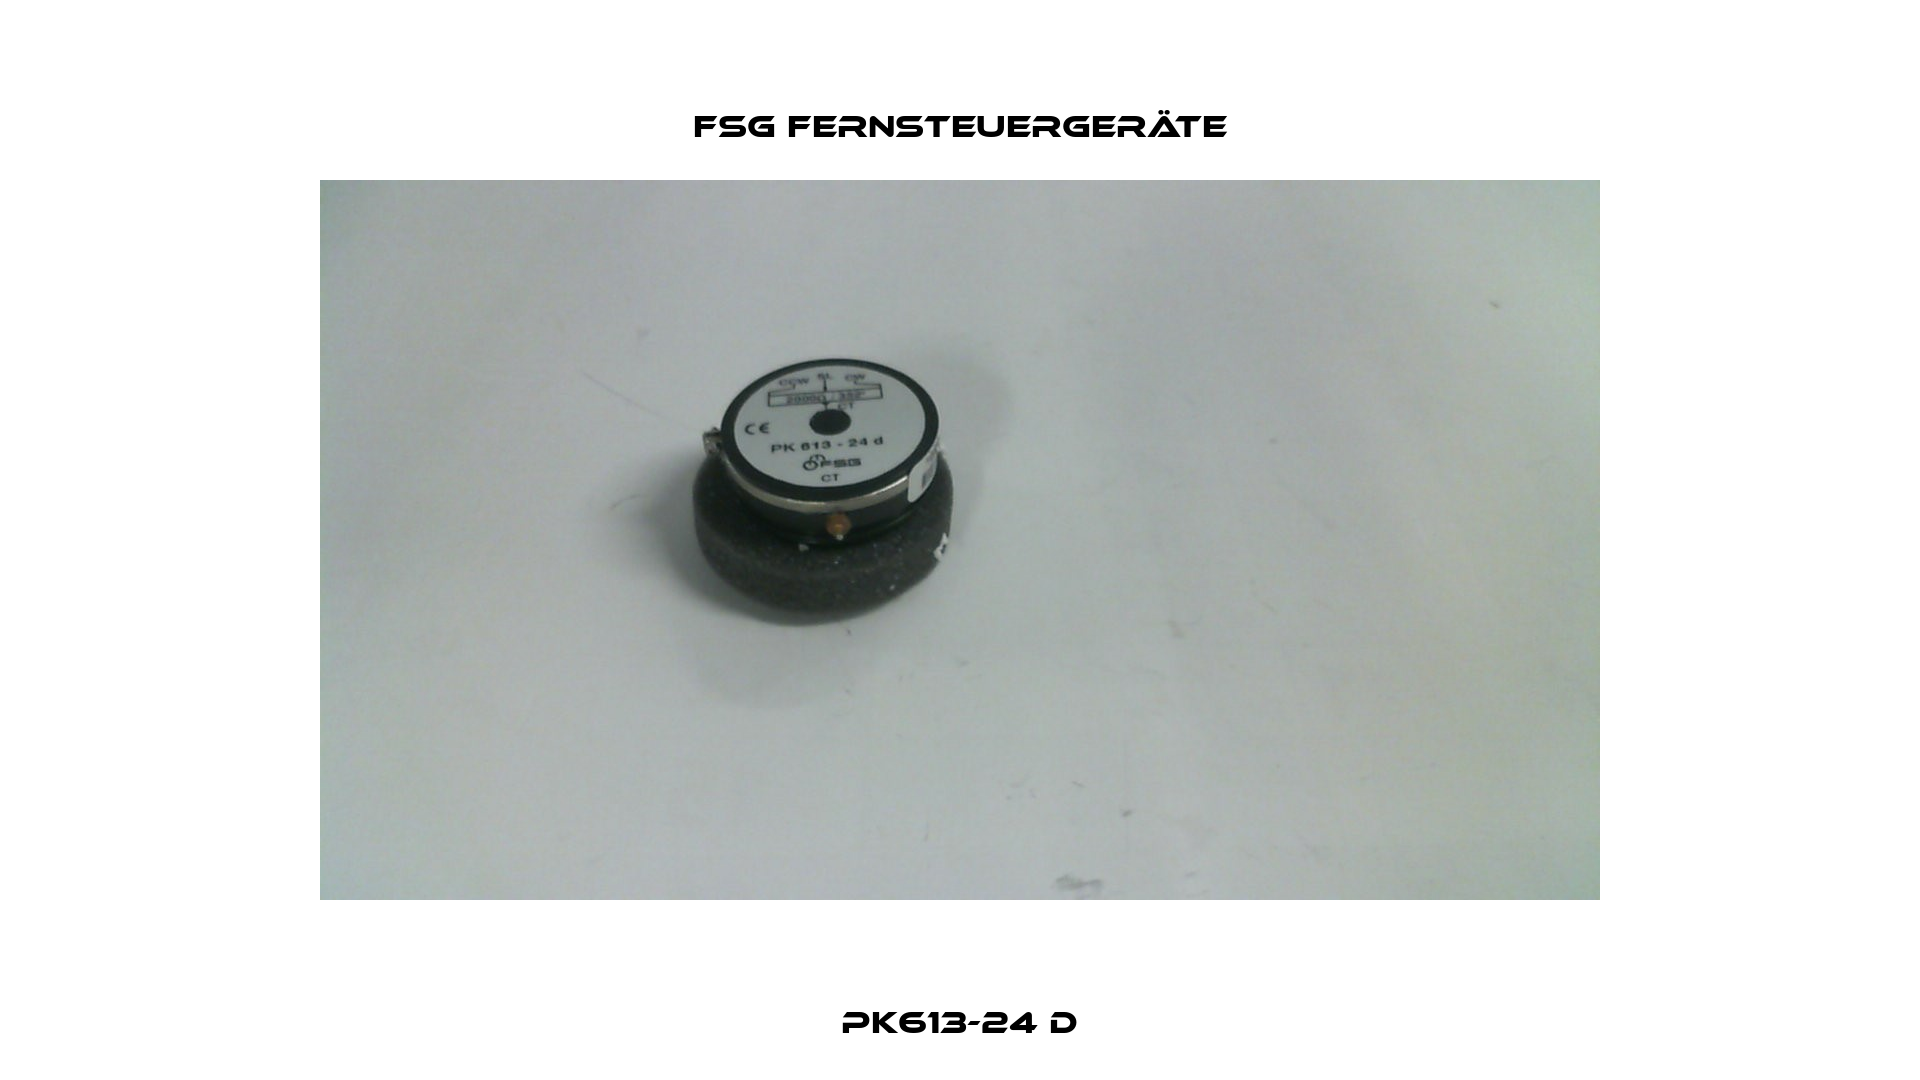 PK613-24 D FSG Fernsteuergeräte